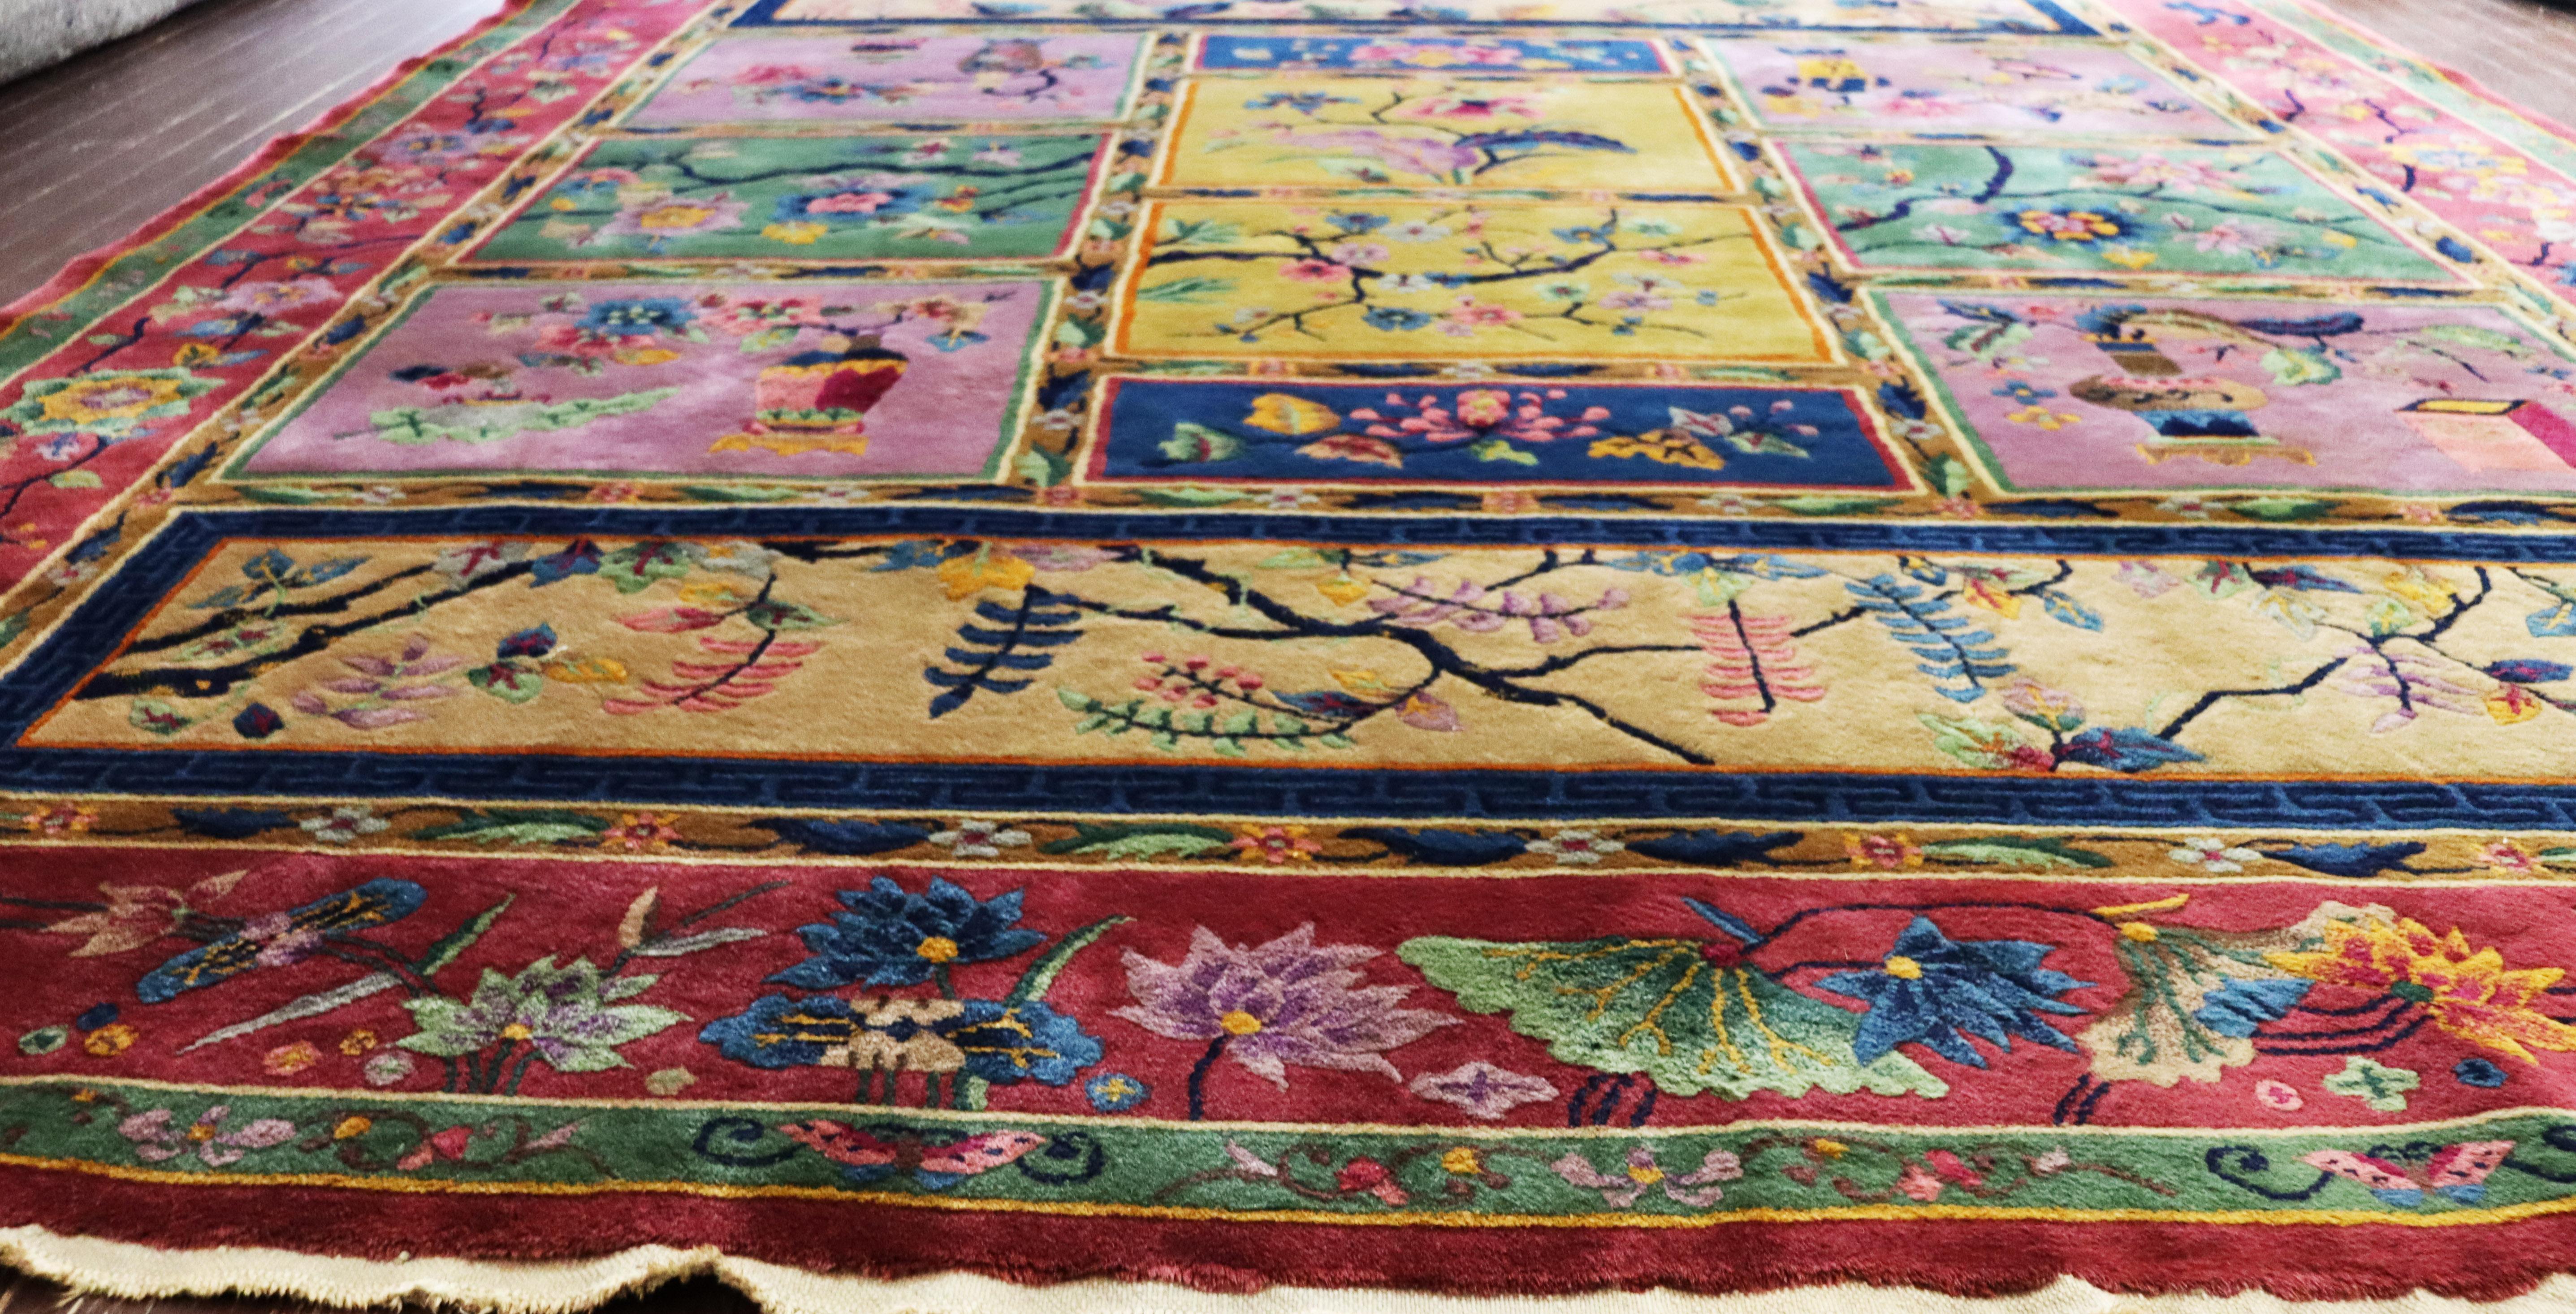 20th Century Antique Art Deco Chinese carpet, Most Unusual, 8' x 9'9